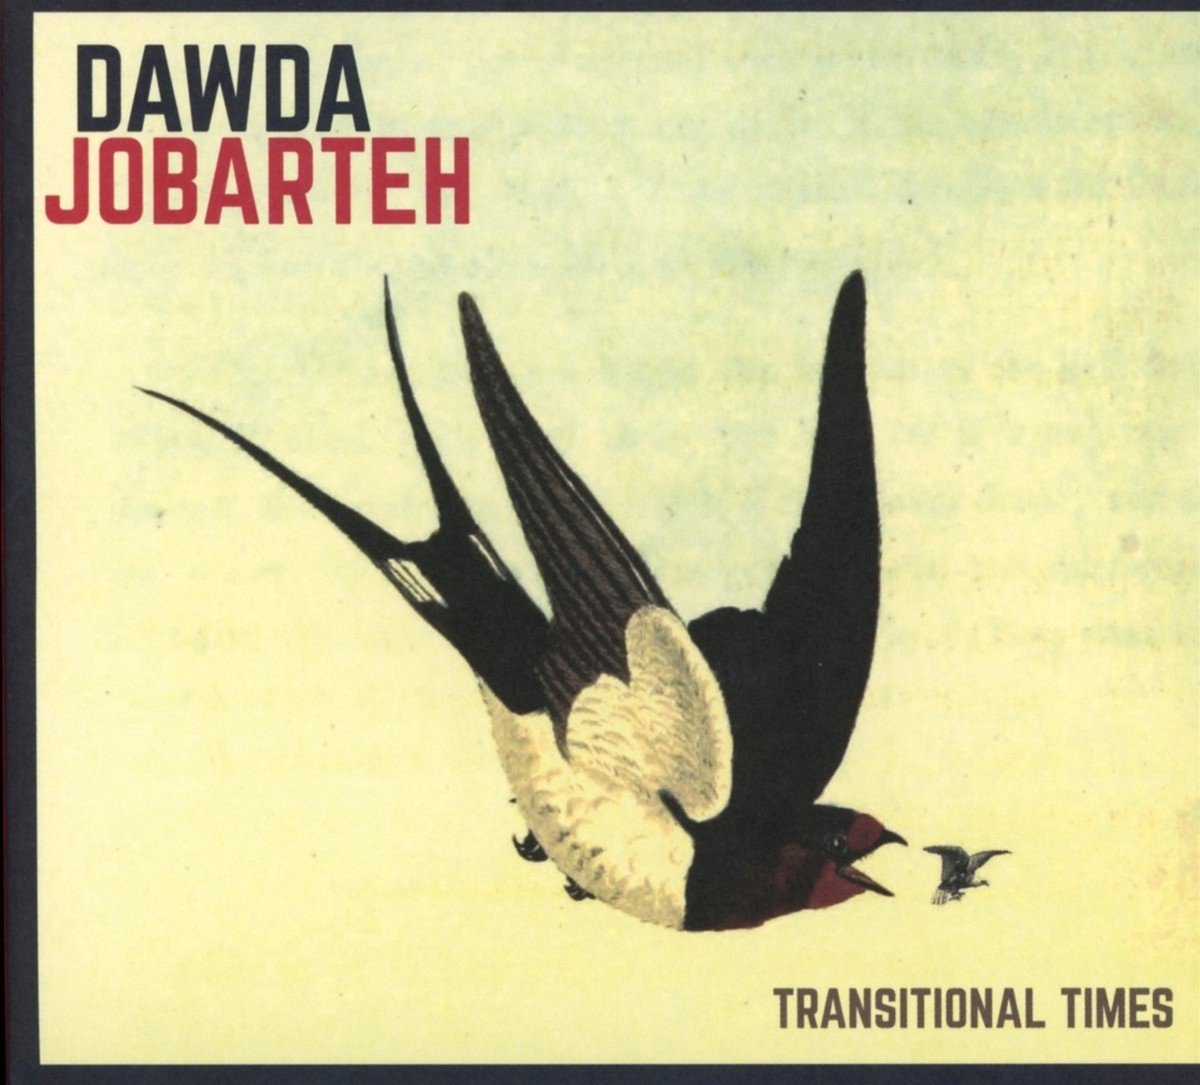 Dawda Jobarteh - Transitional Times (CD) - Dawda Jobarteh